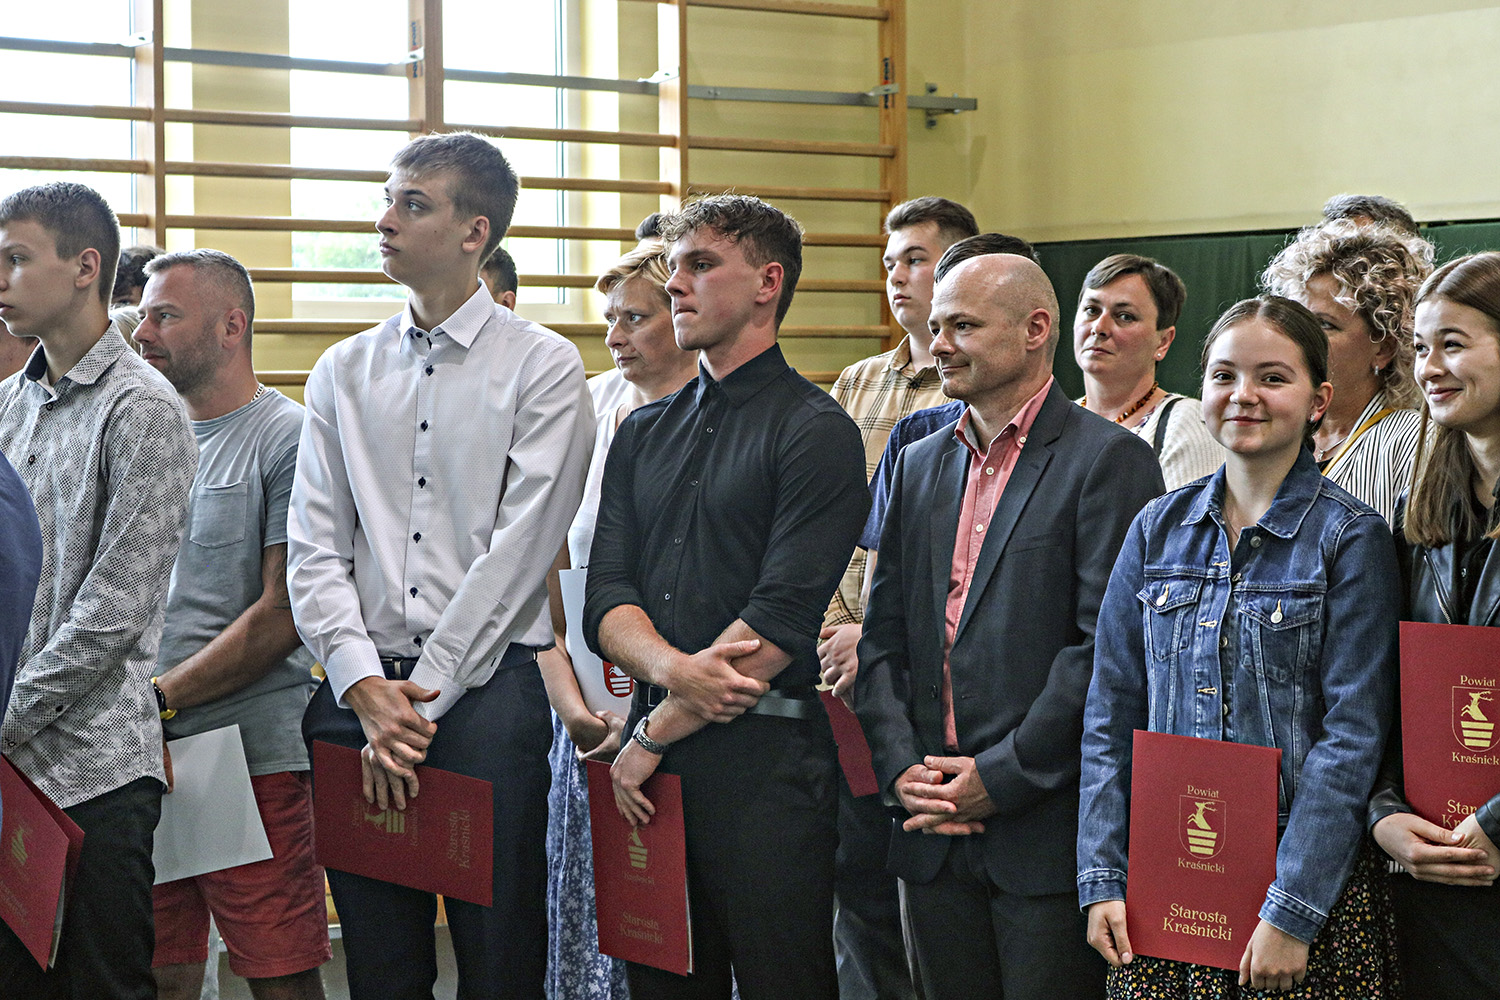 Zawodnicy wyróżnieni nagrodą Starosty Kraśnickiego wraz z rodzicami